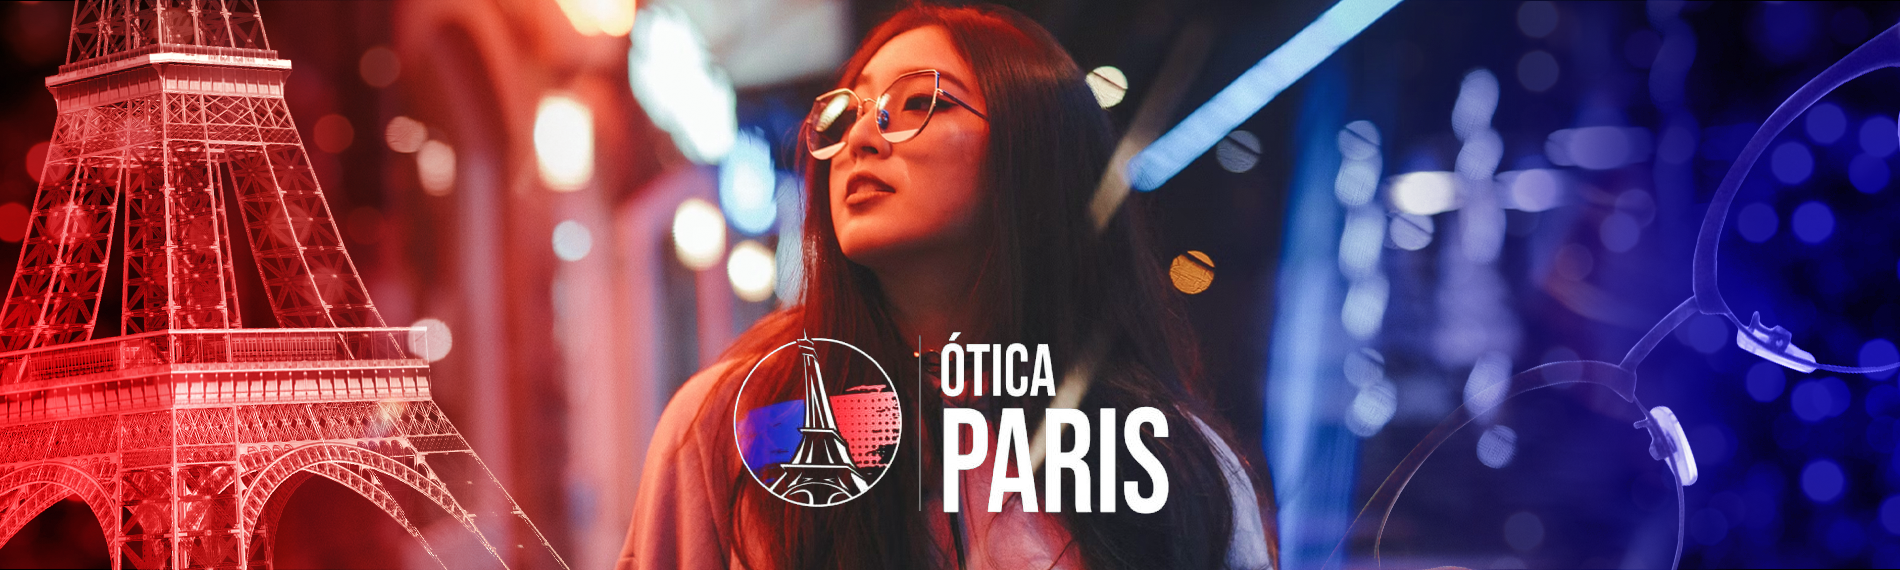 Ótica Paris Cidade Satélite